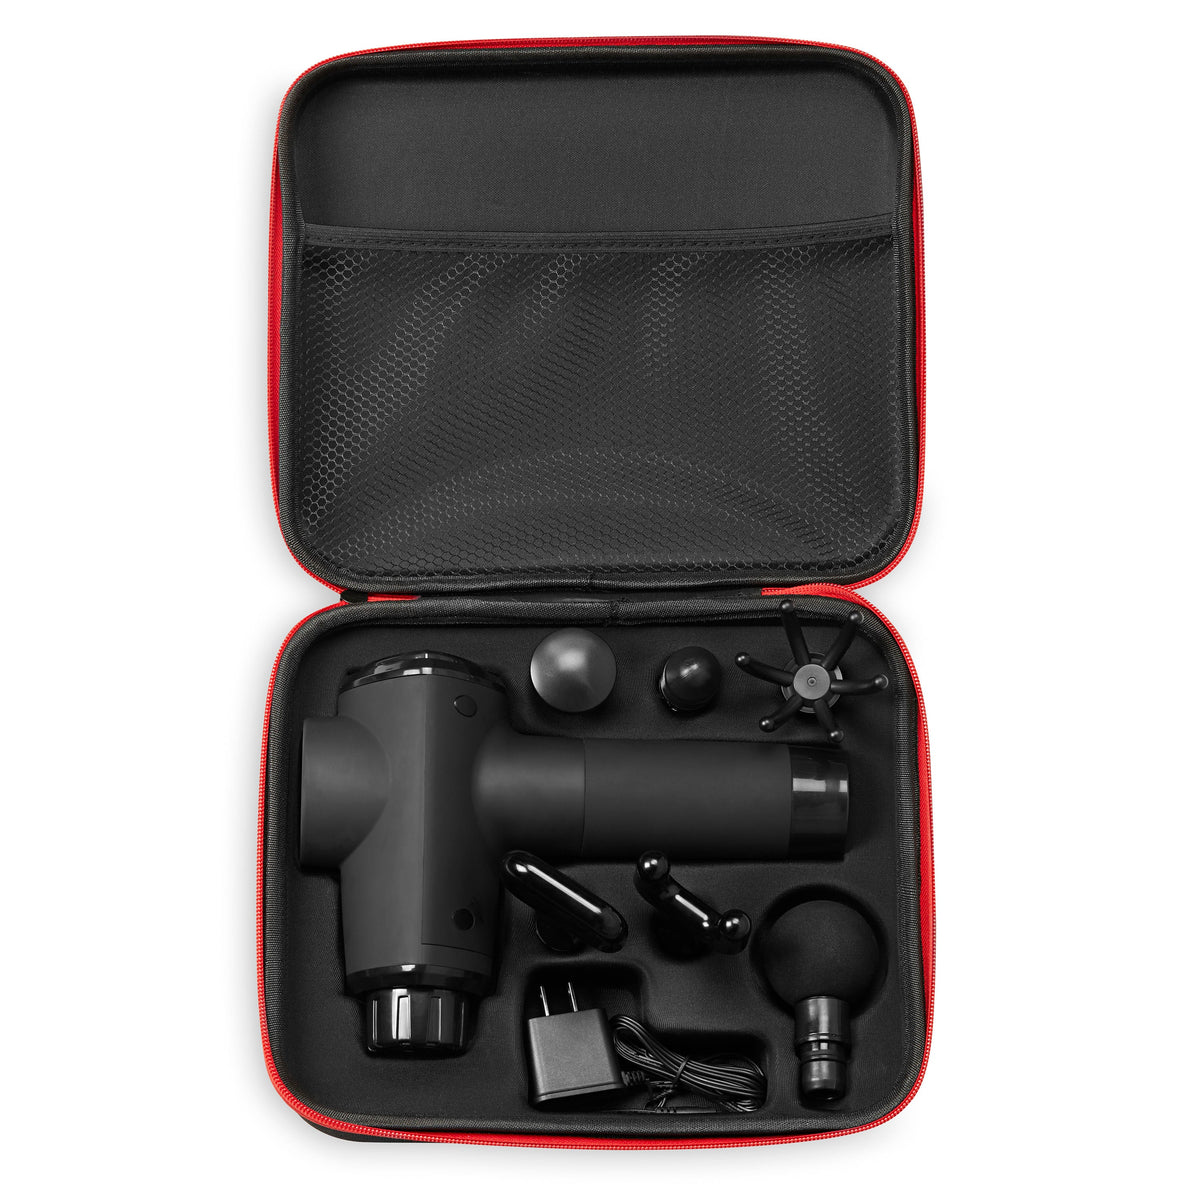 Heliofit Recovr XT Percussion Massage Gun packable case